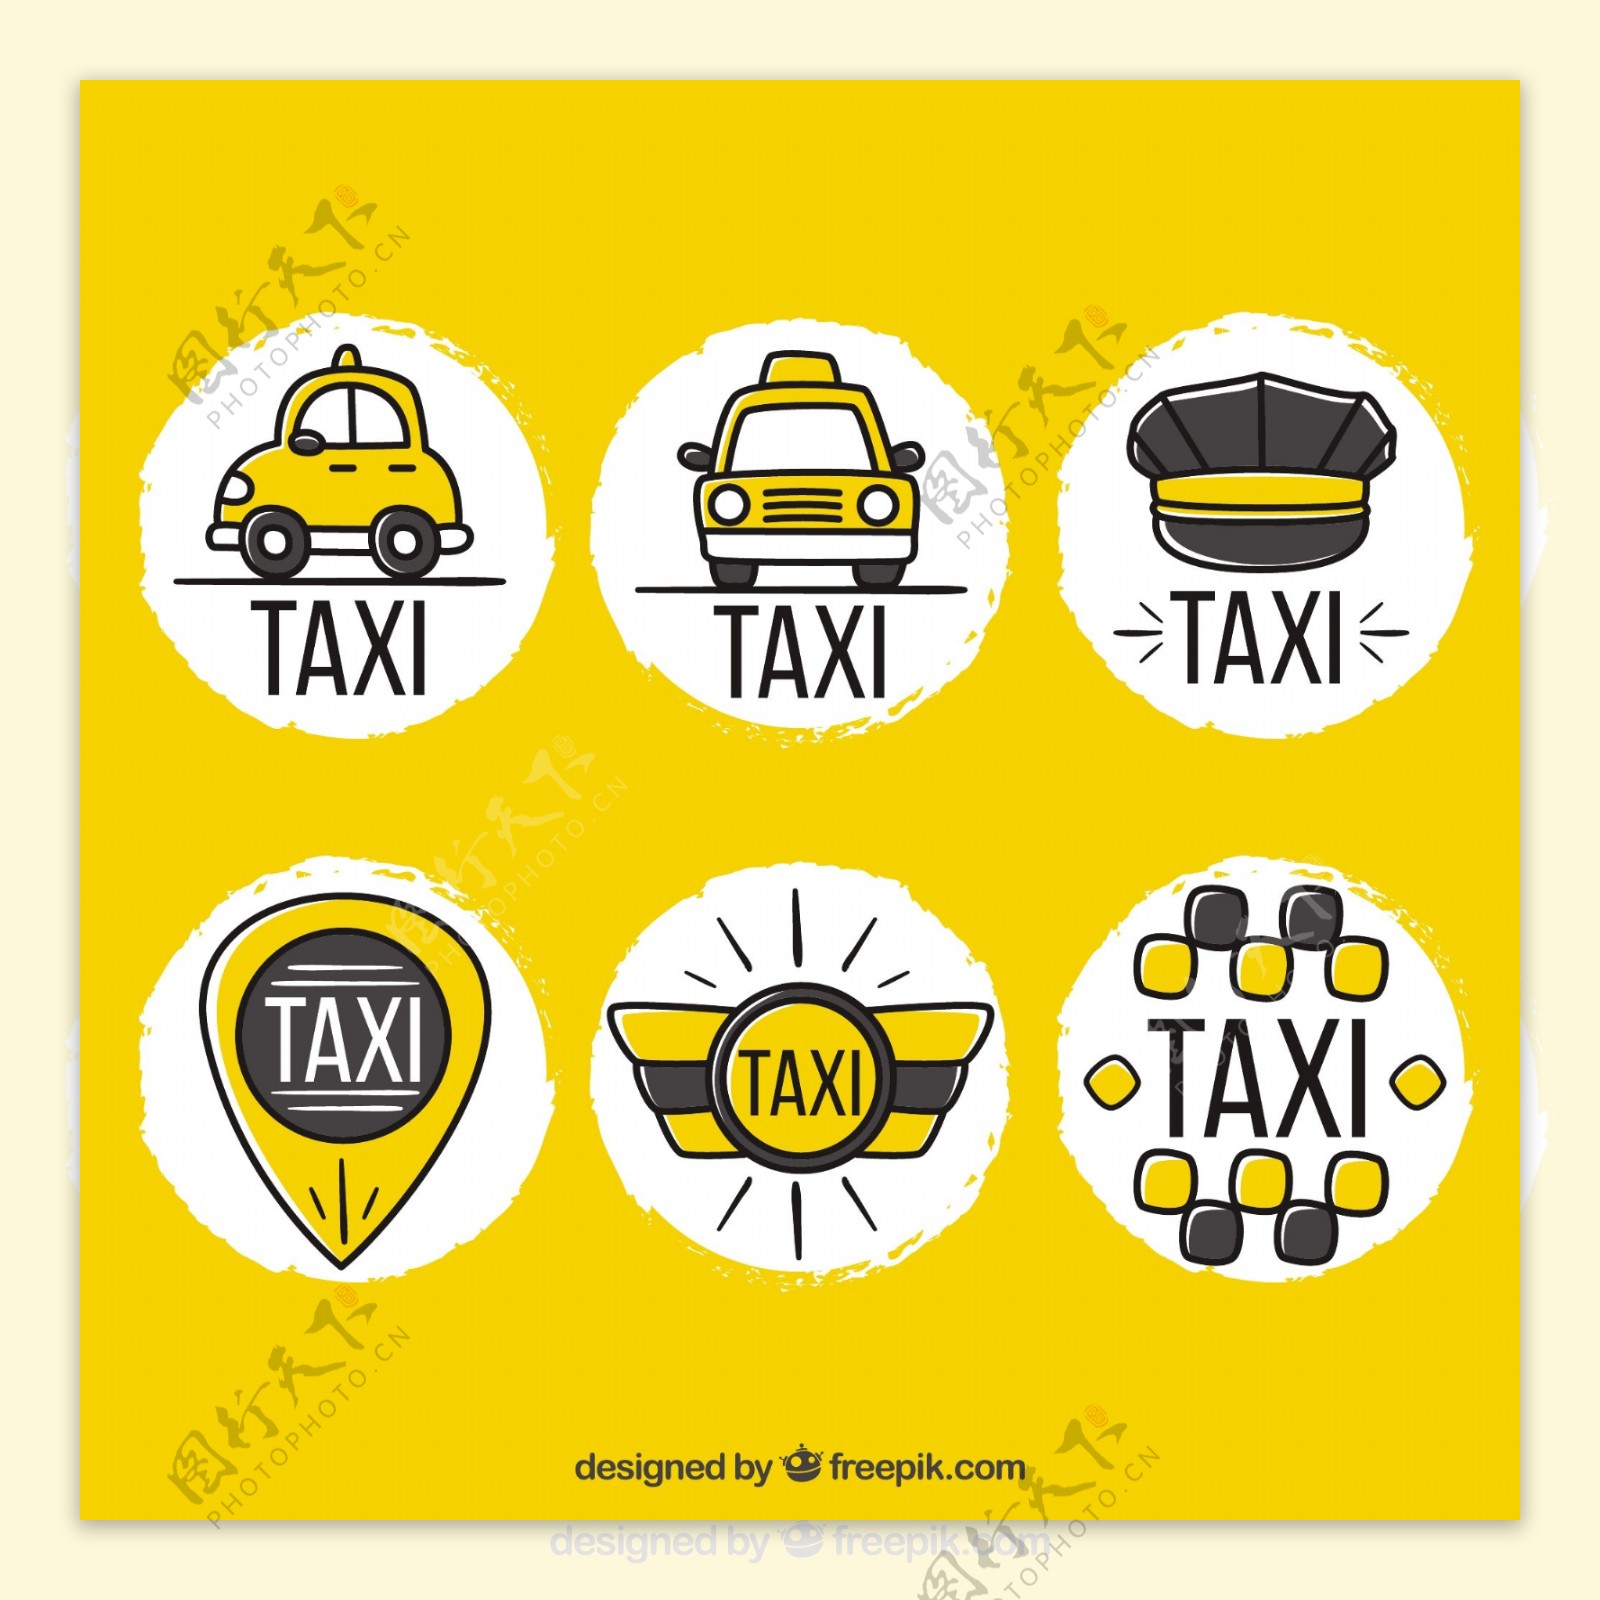 有趣的手工绘制的标志出租车公司